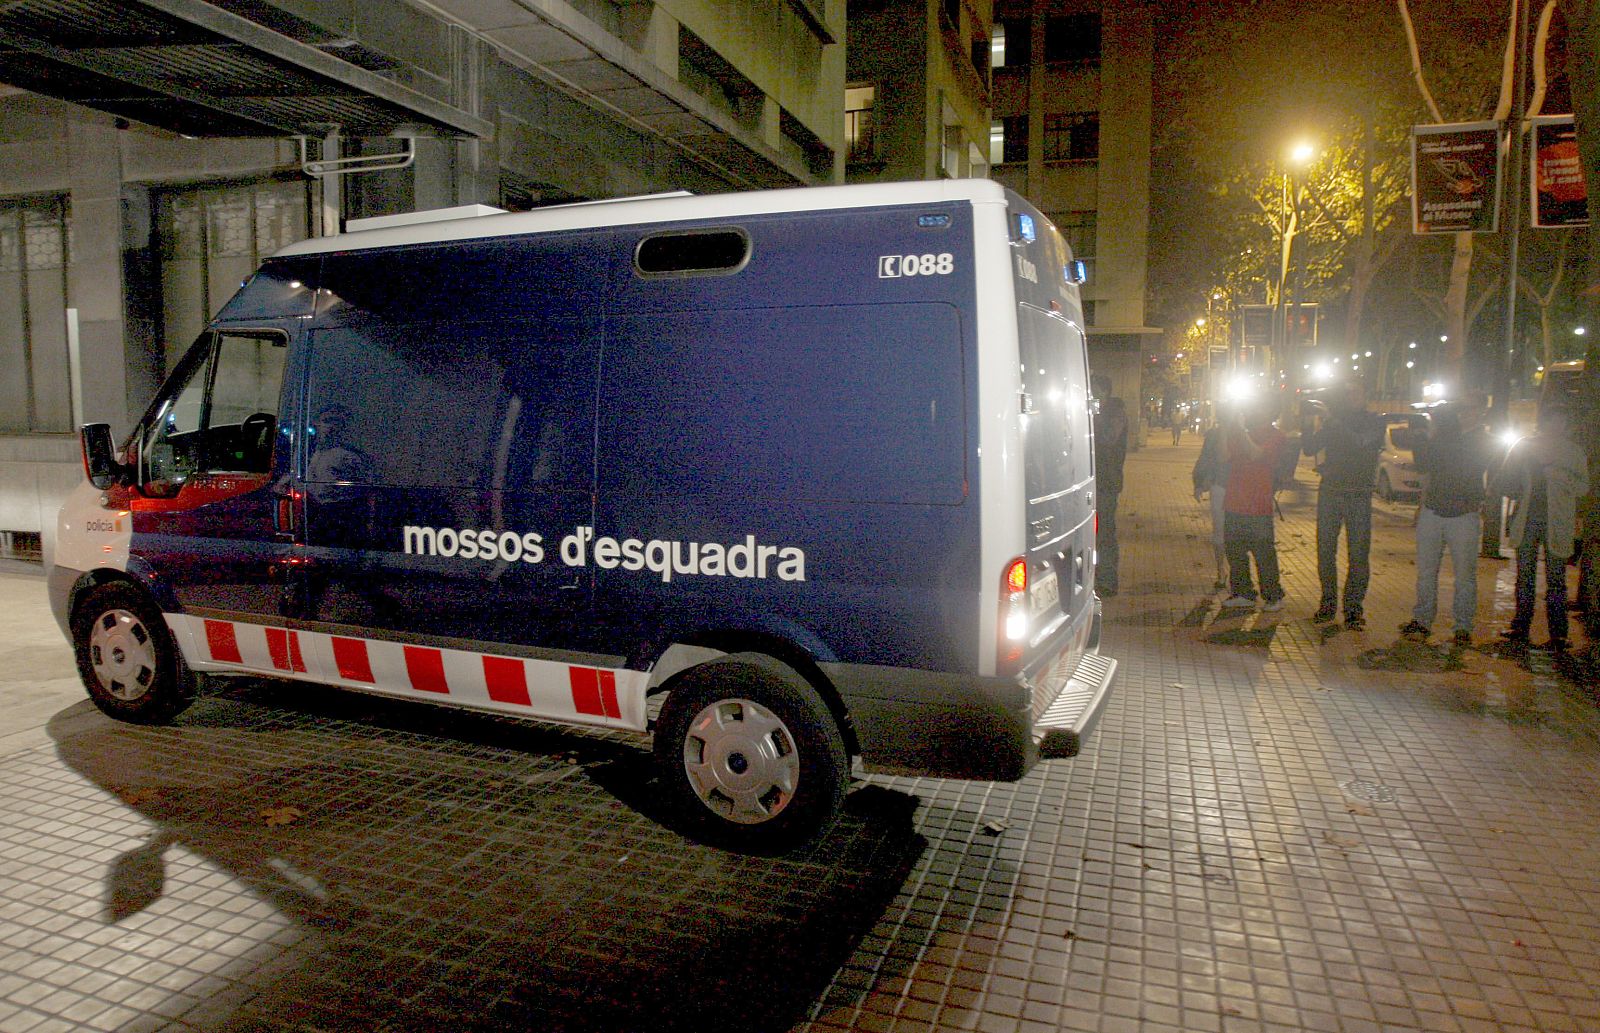 Los mossos de Esquadra trasladan a la prisión a los cinco "boixos nois" detenidos por su presunta participación en los incidentes violentos registrados el pasado sábado durante el partido entre el Espanyol y el Barcelona.